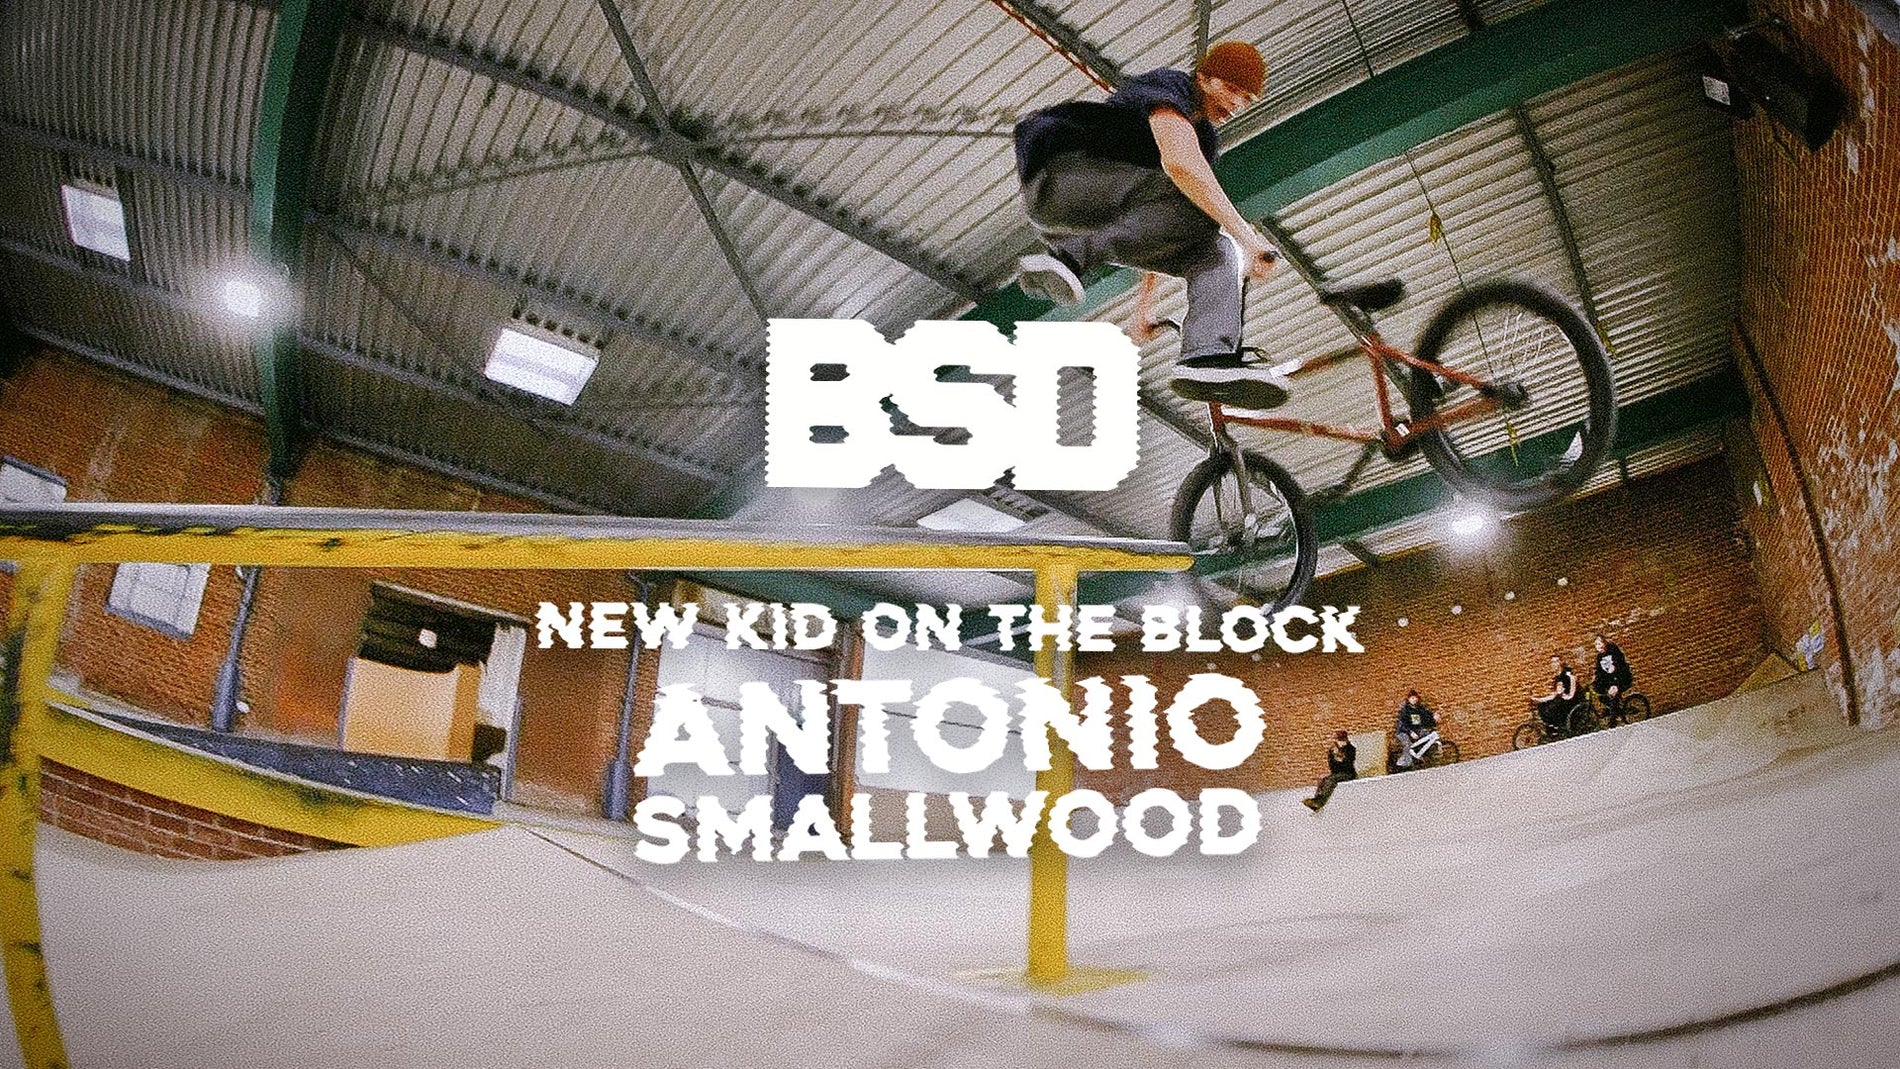 Antonio Smallwood - New Kid On The Block Video